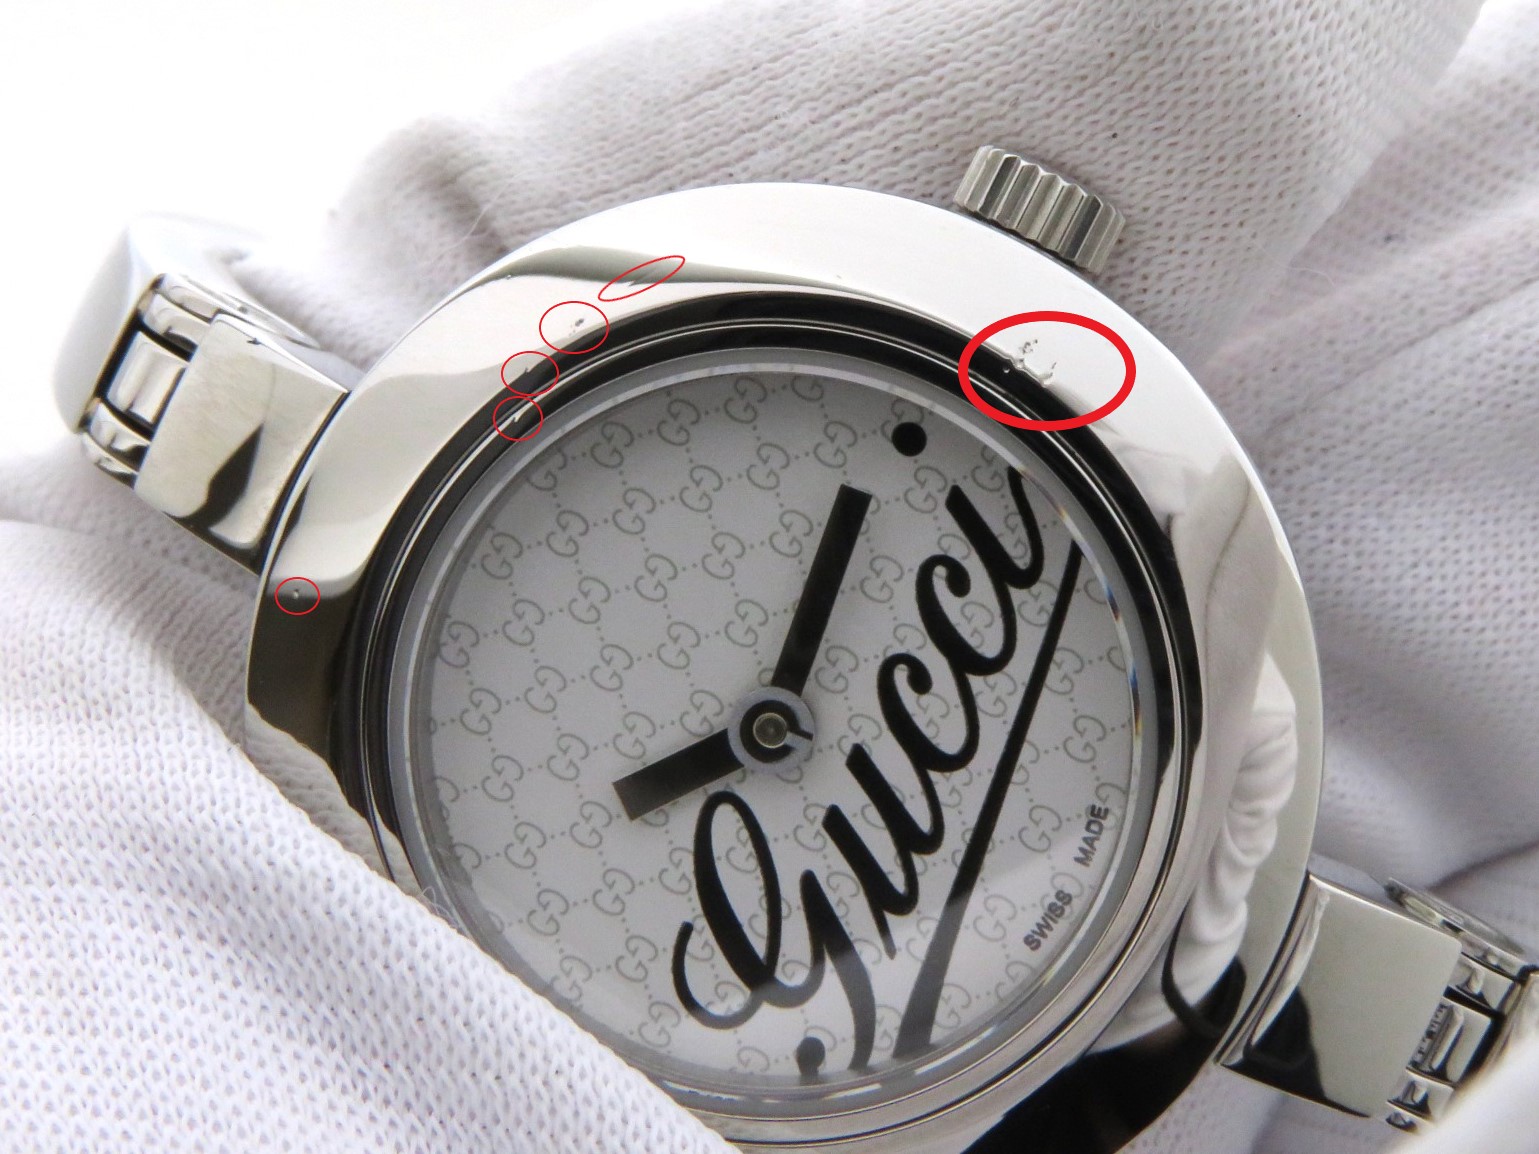 Gucci 時計 グッチ 105 クオーツ シルバー文字盤 ステンレススチールss レディース 430 の購入なら 質 の大黒屋 公式